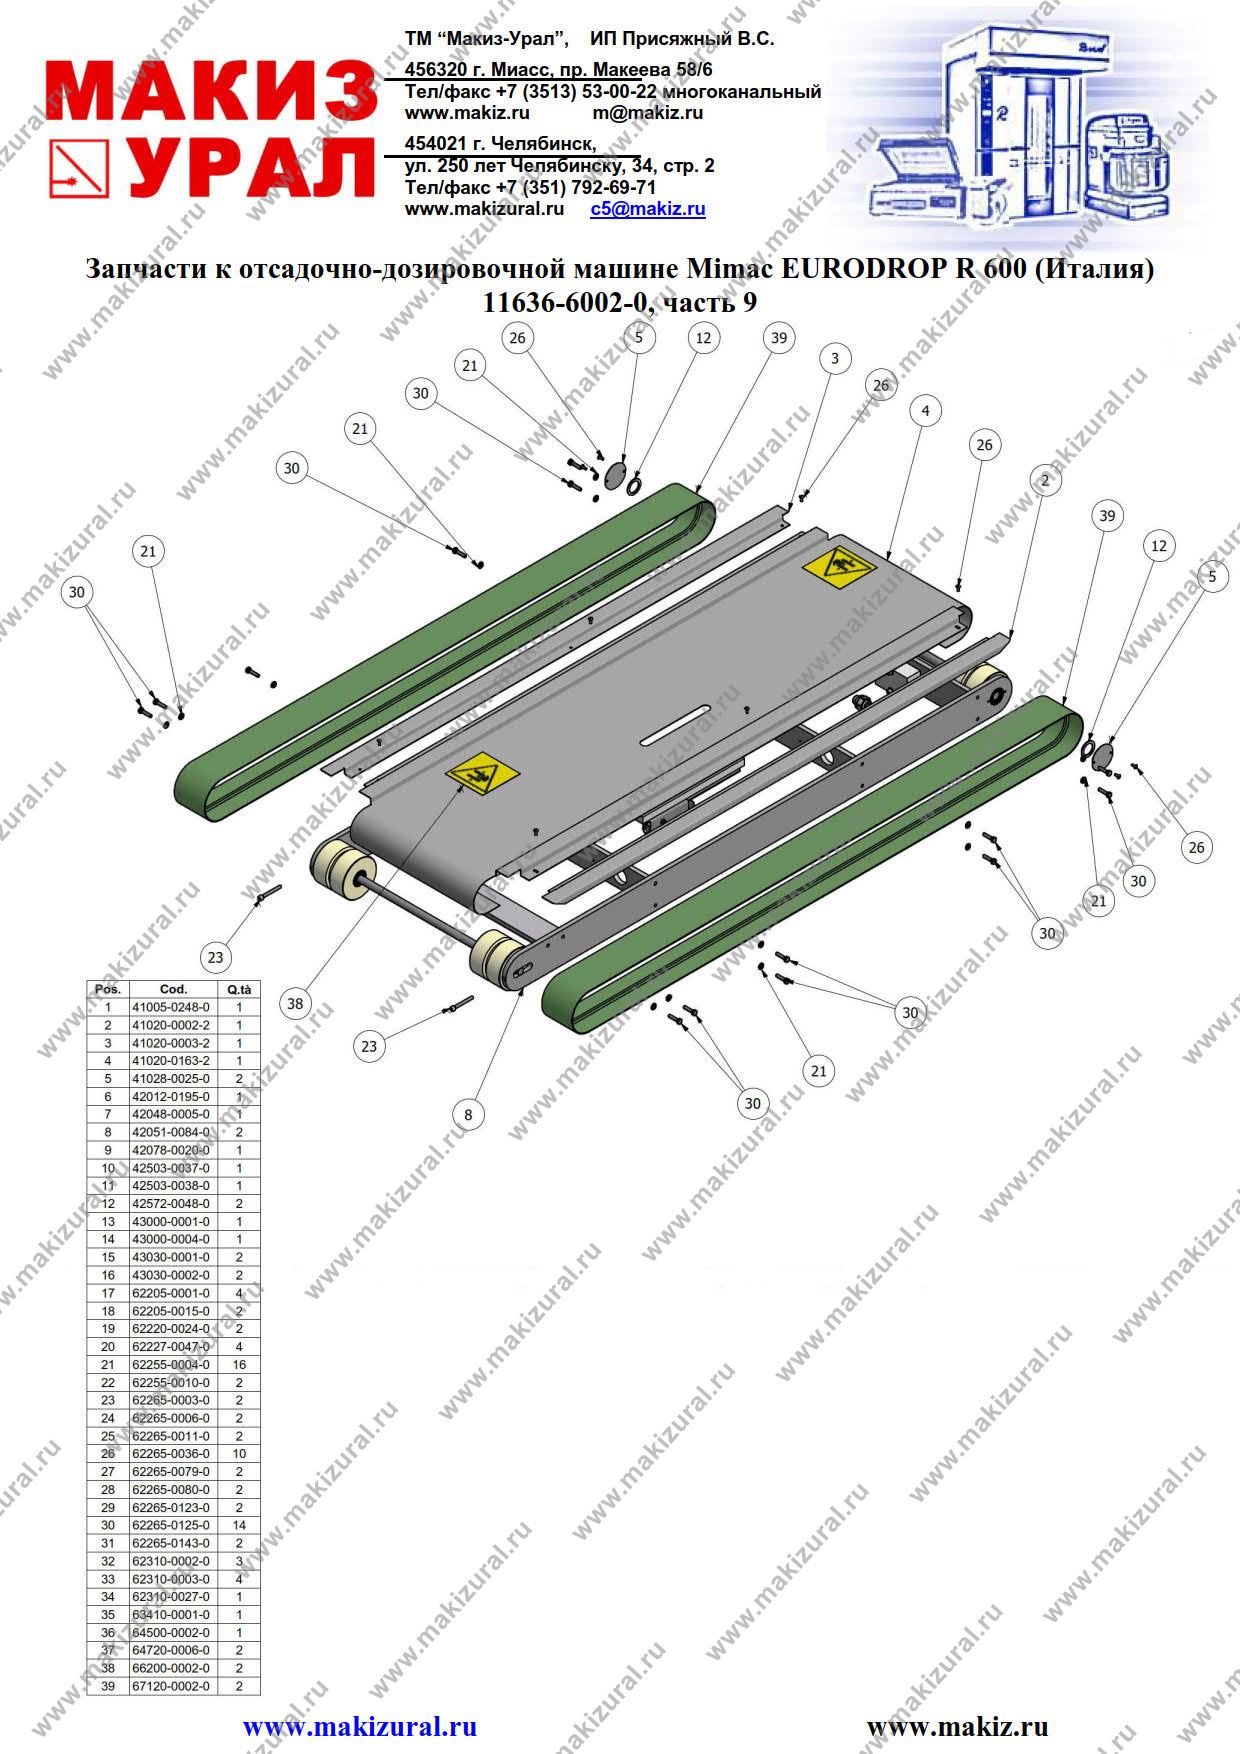 Запасные части для отсадочно-дозировочной машины EURODROP R 600 Mimac (Италия) - 11636-6002-0, часть 9